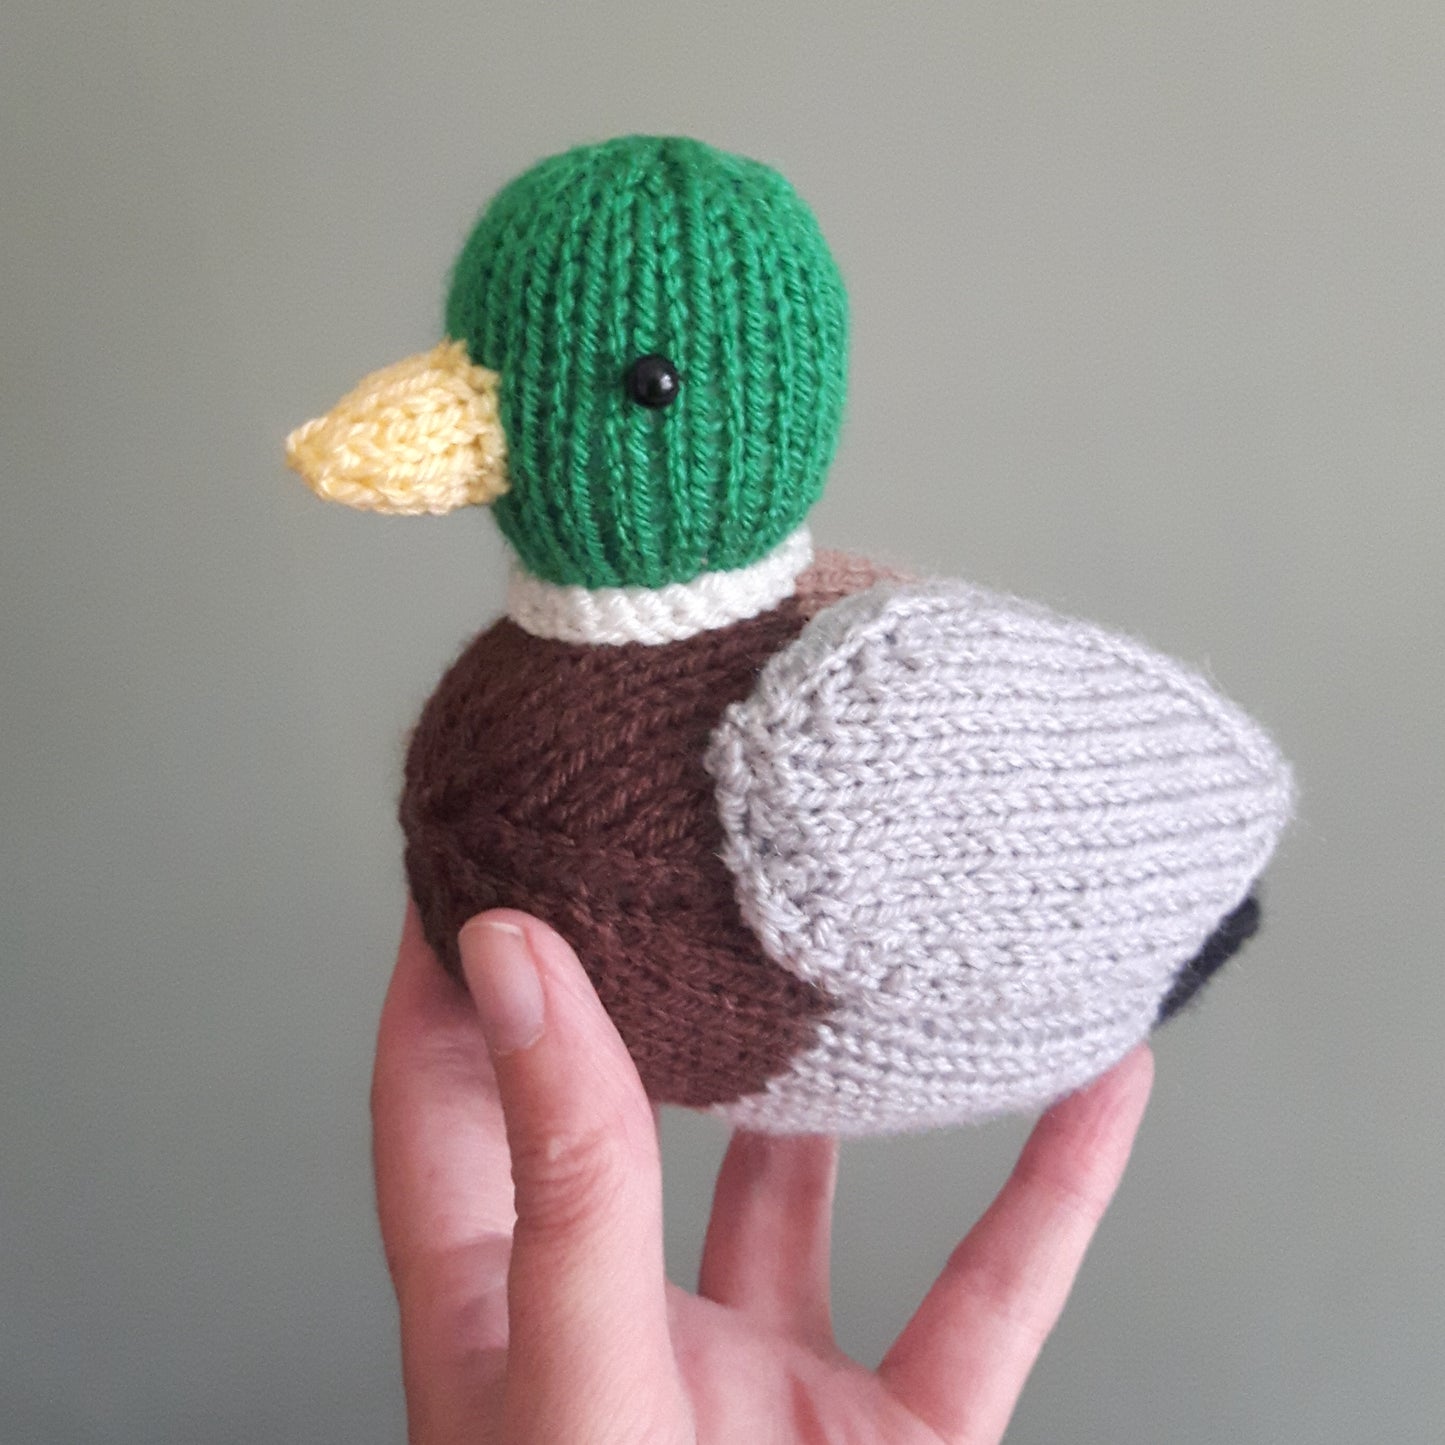 a cute knitted mallard duck having a cuddle